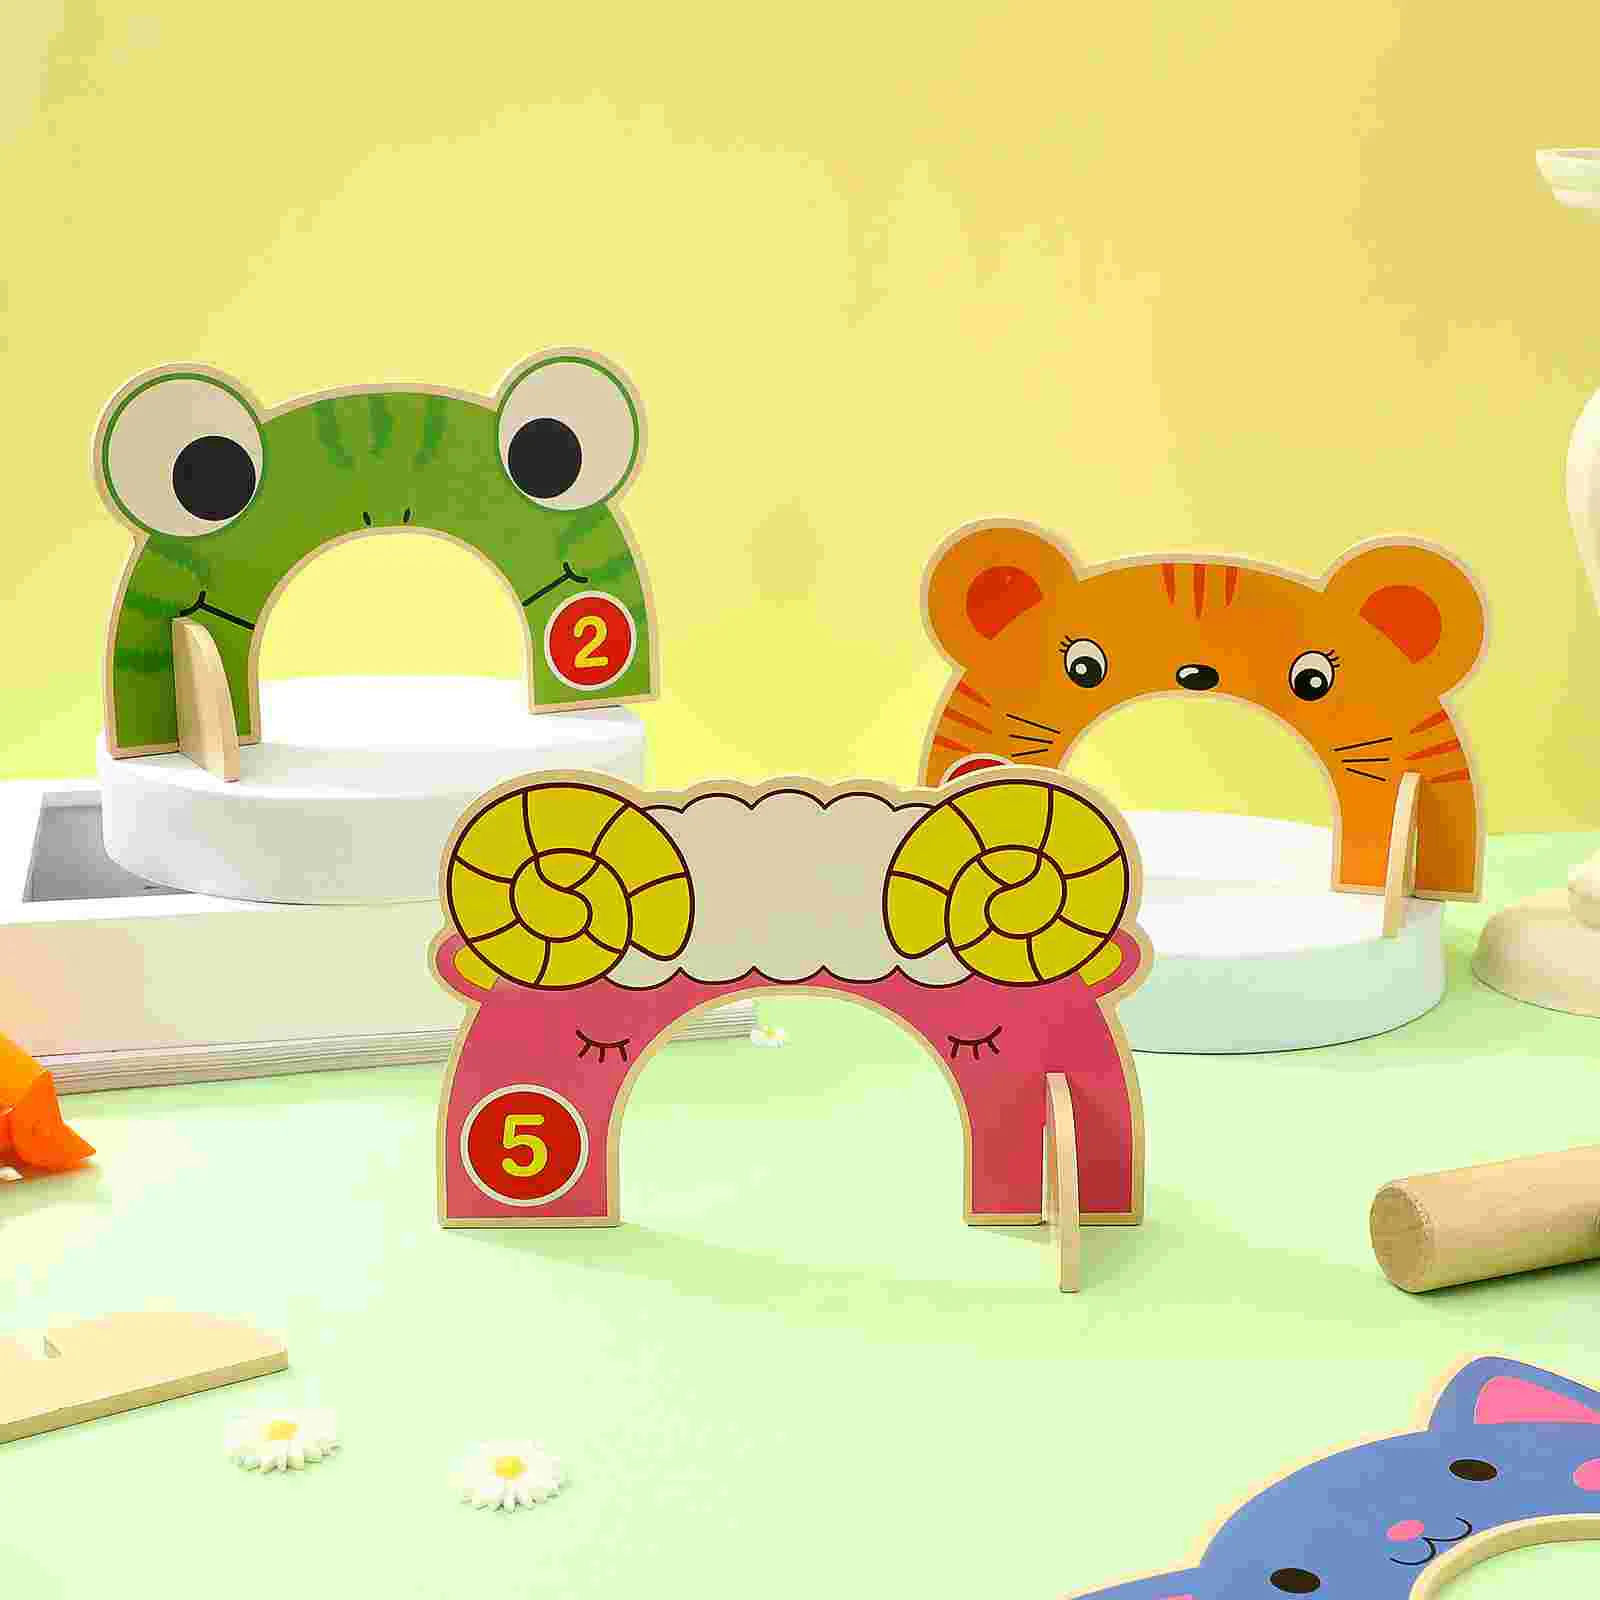 

Набор детских игрушек для игры на лужайку, с изображением животных